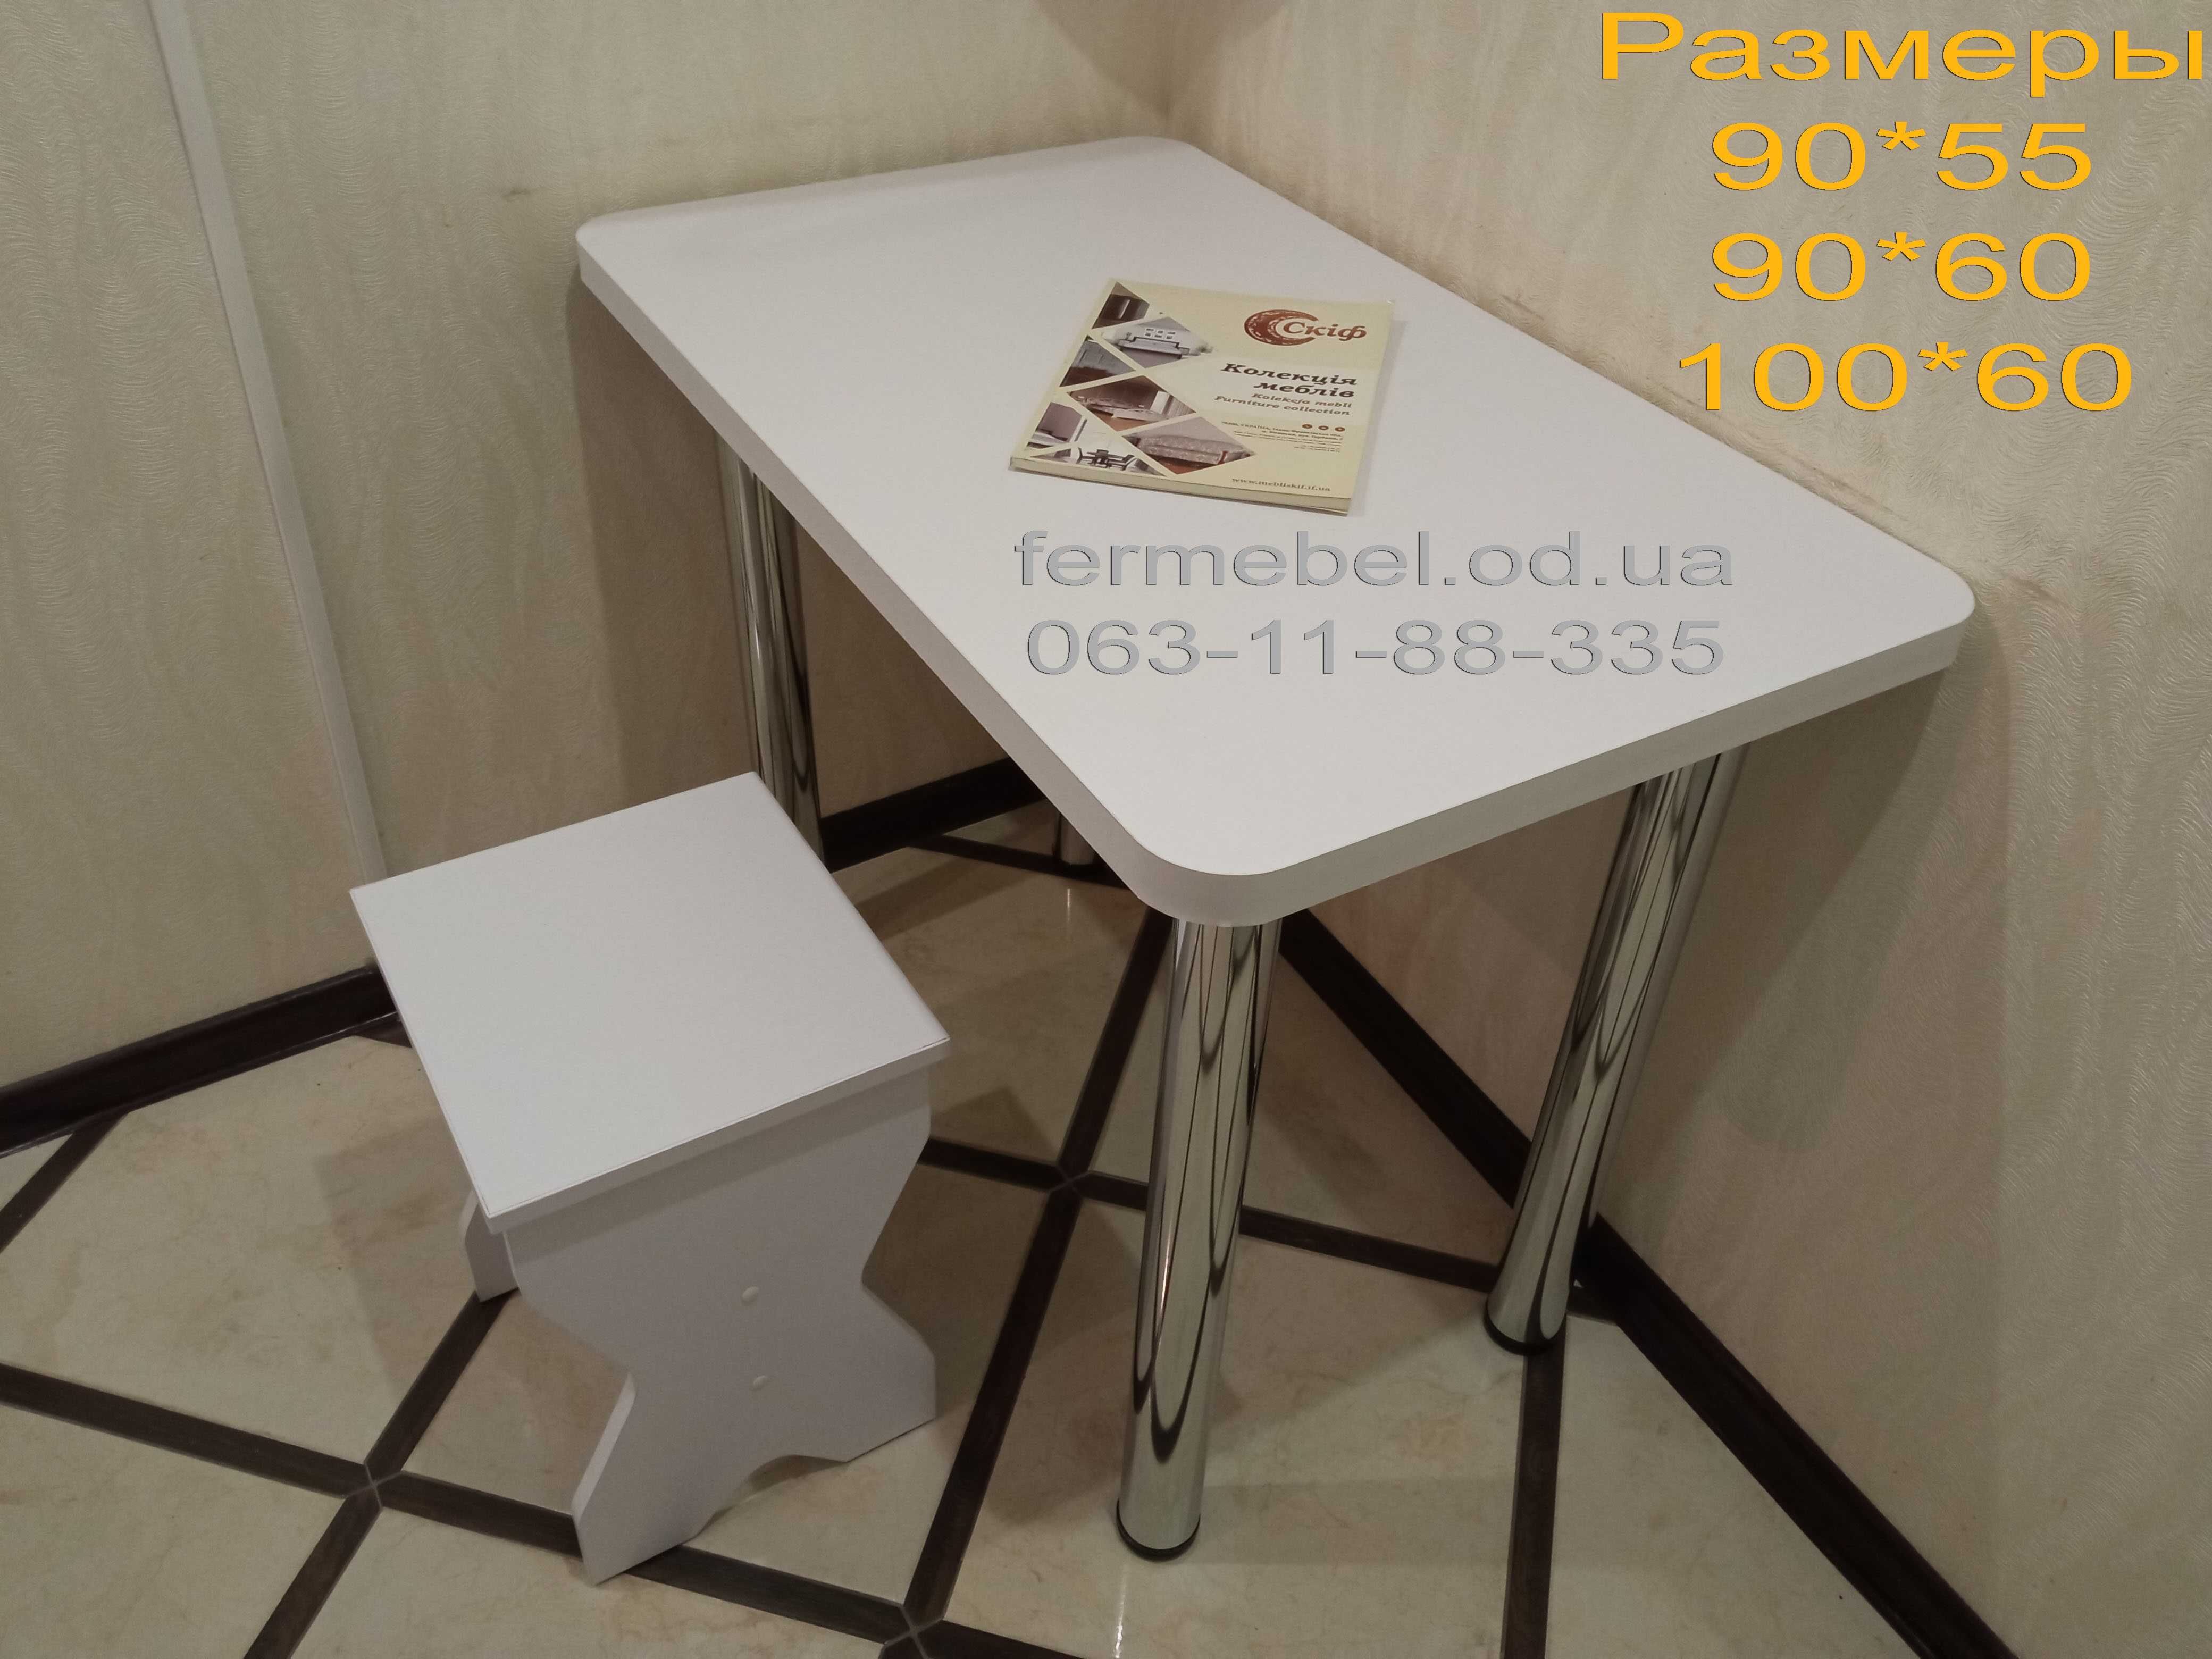 Стол для кухни КС хром  Фер мебель  в наличии сравните цены